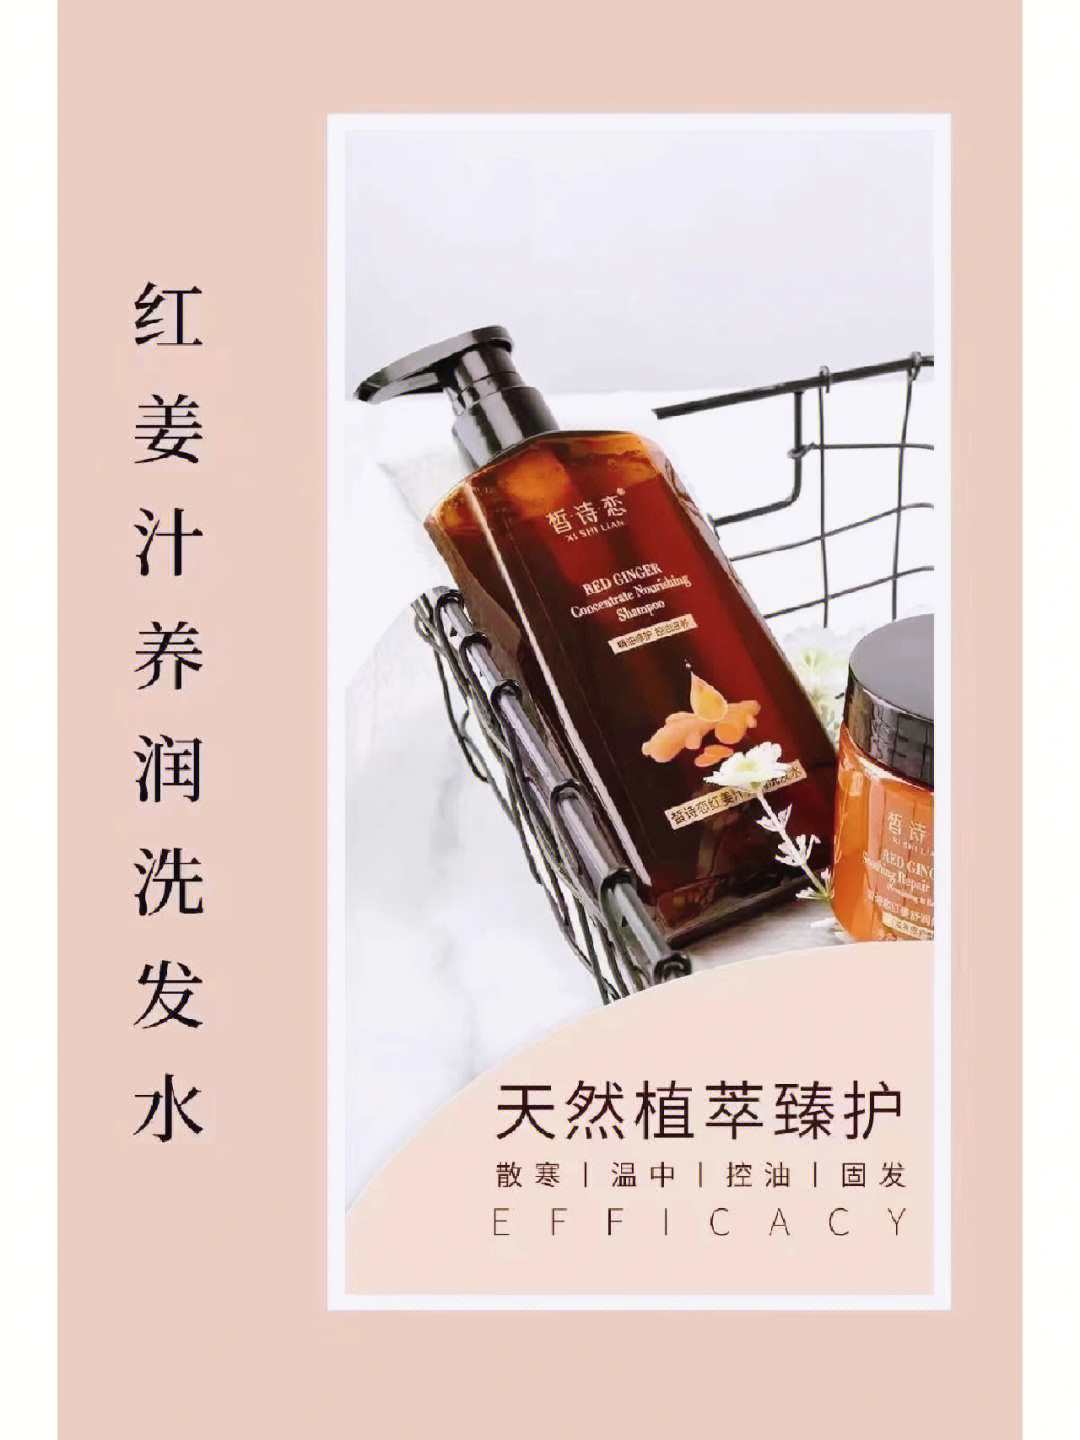 分享一款神仙产品95999599 皙诗恋洗护黄金组合——洗发水